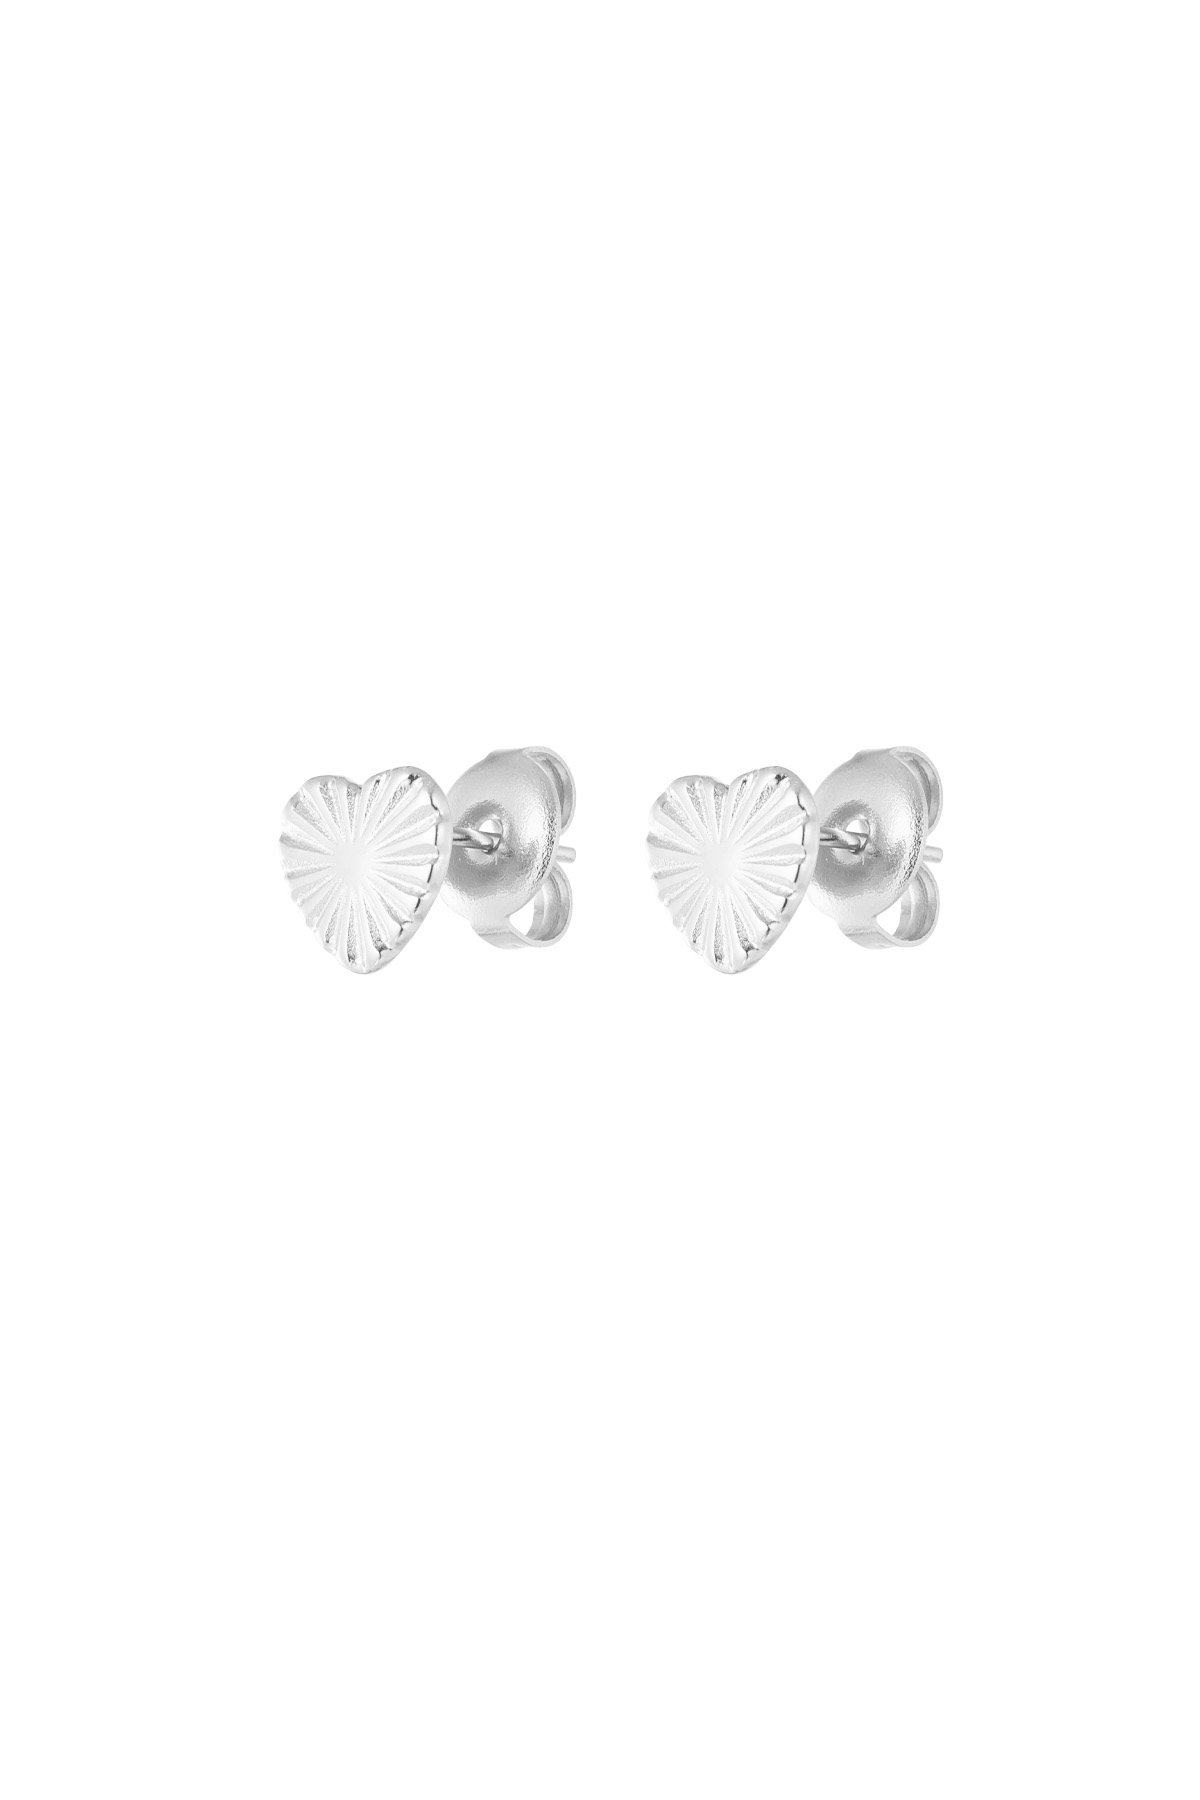 Herzförmige Ohrringe mit Muster – Silber